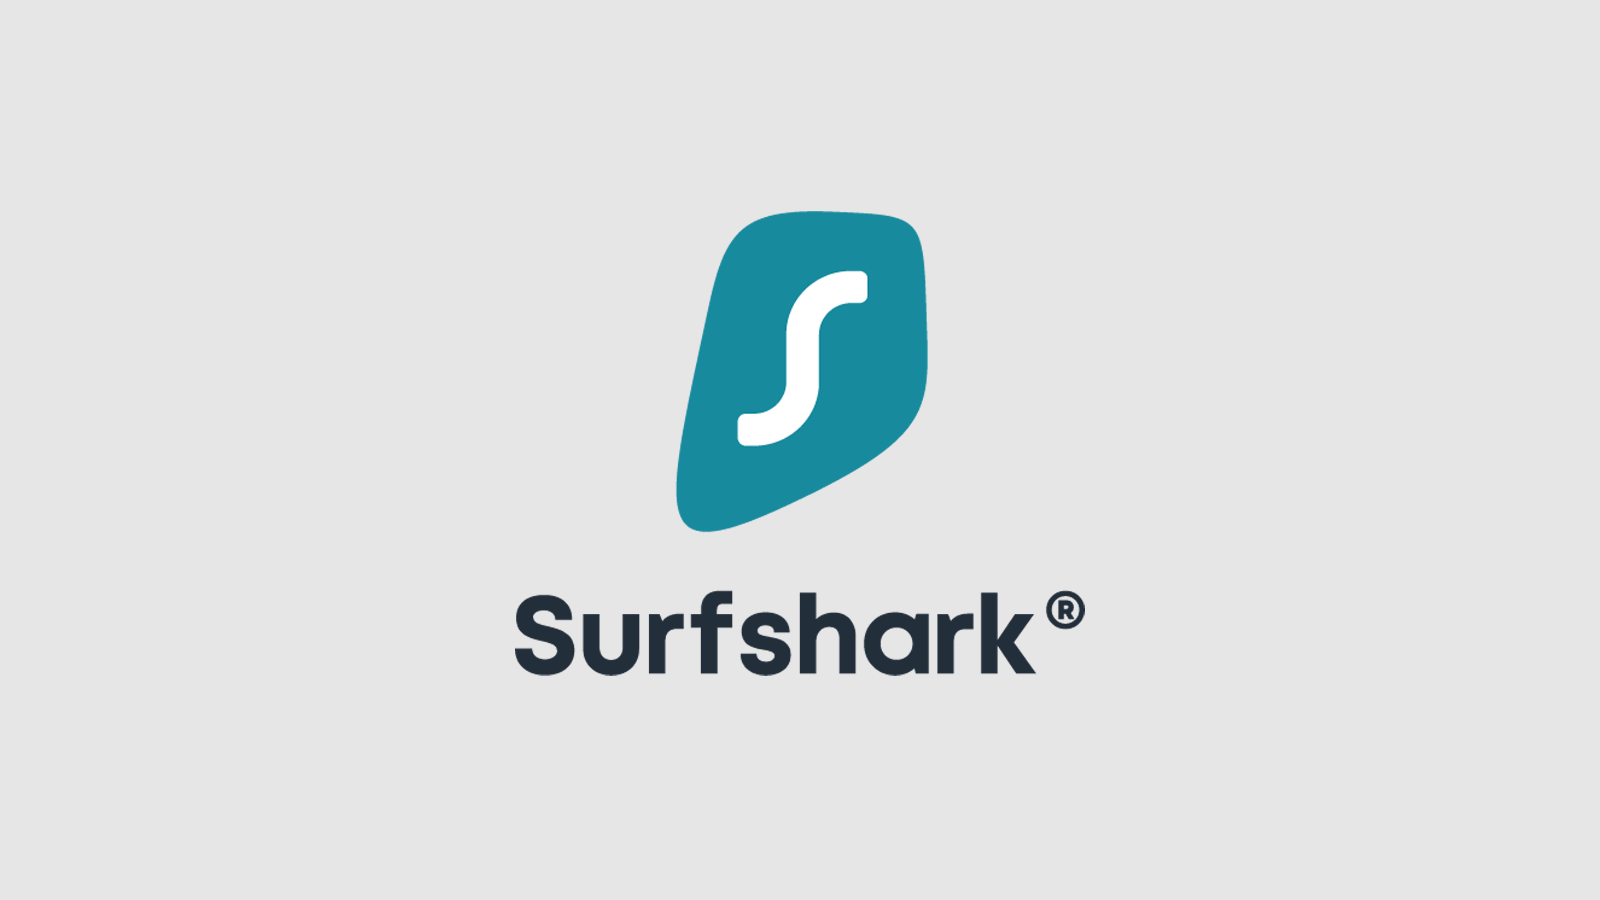 SurfShark - Best for the price